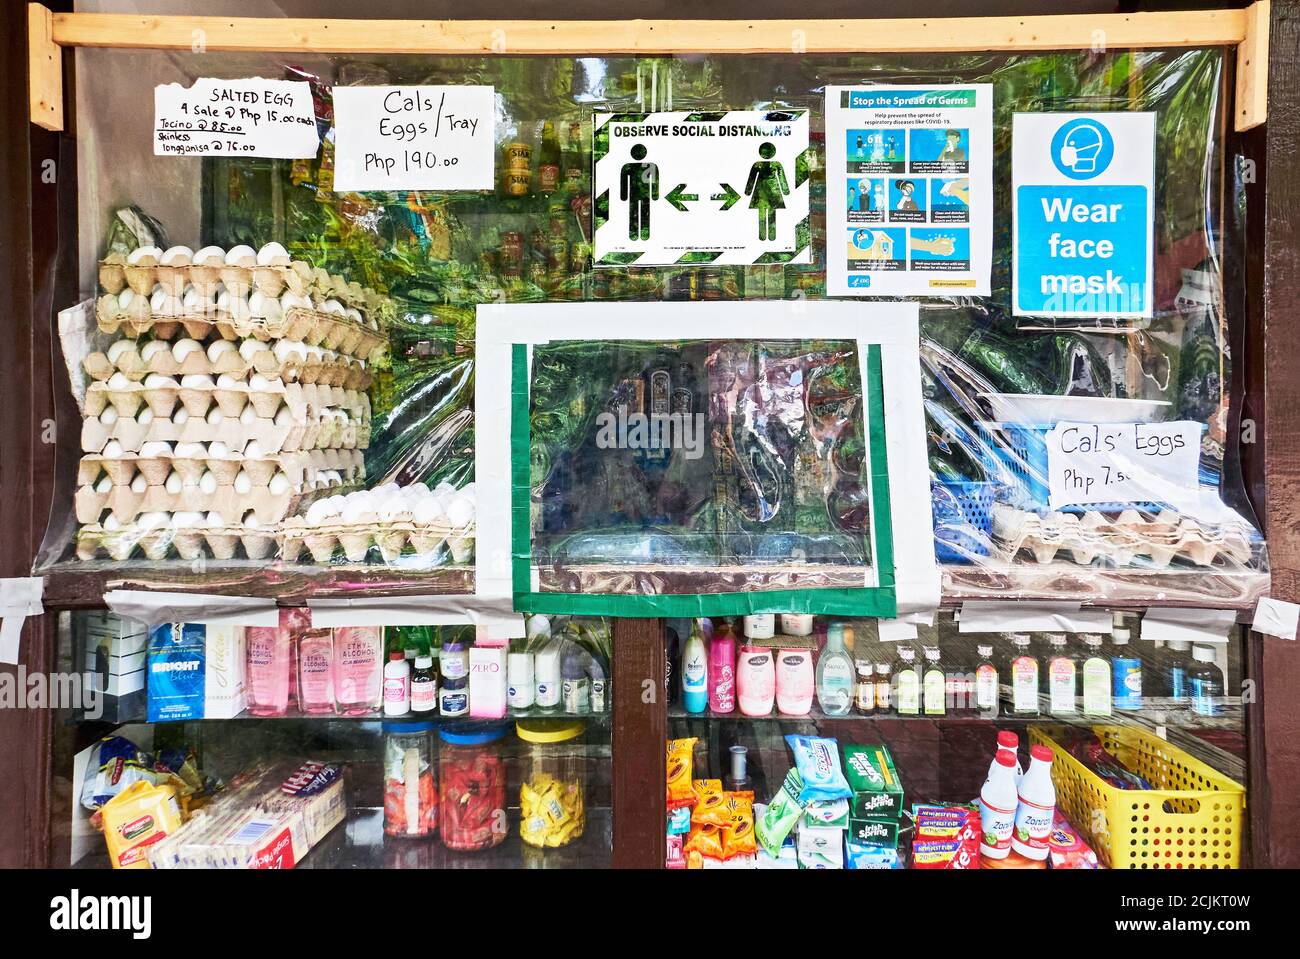 Installation d'un écran en plastique comme protection contre le virus corona à un comptoir d'un magasin philippin traditionnel sari-sari, île Boracay, Philippines, Asie Banque D'Images